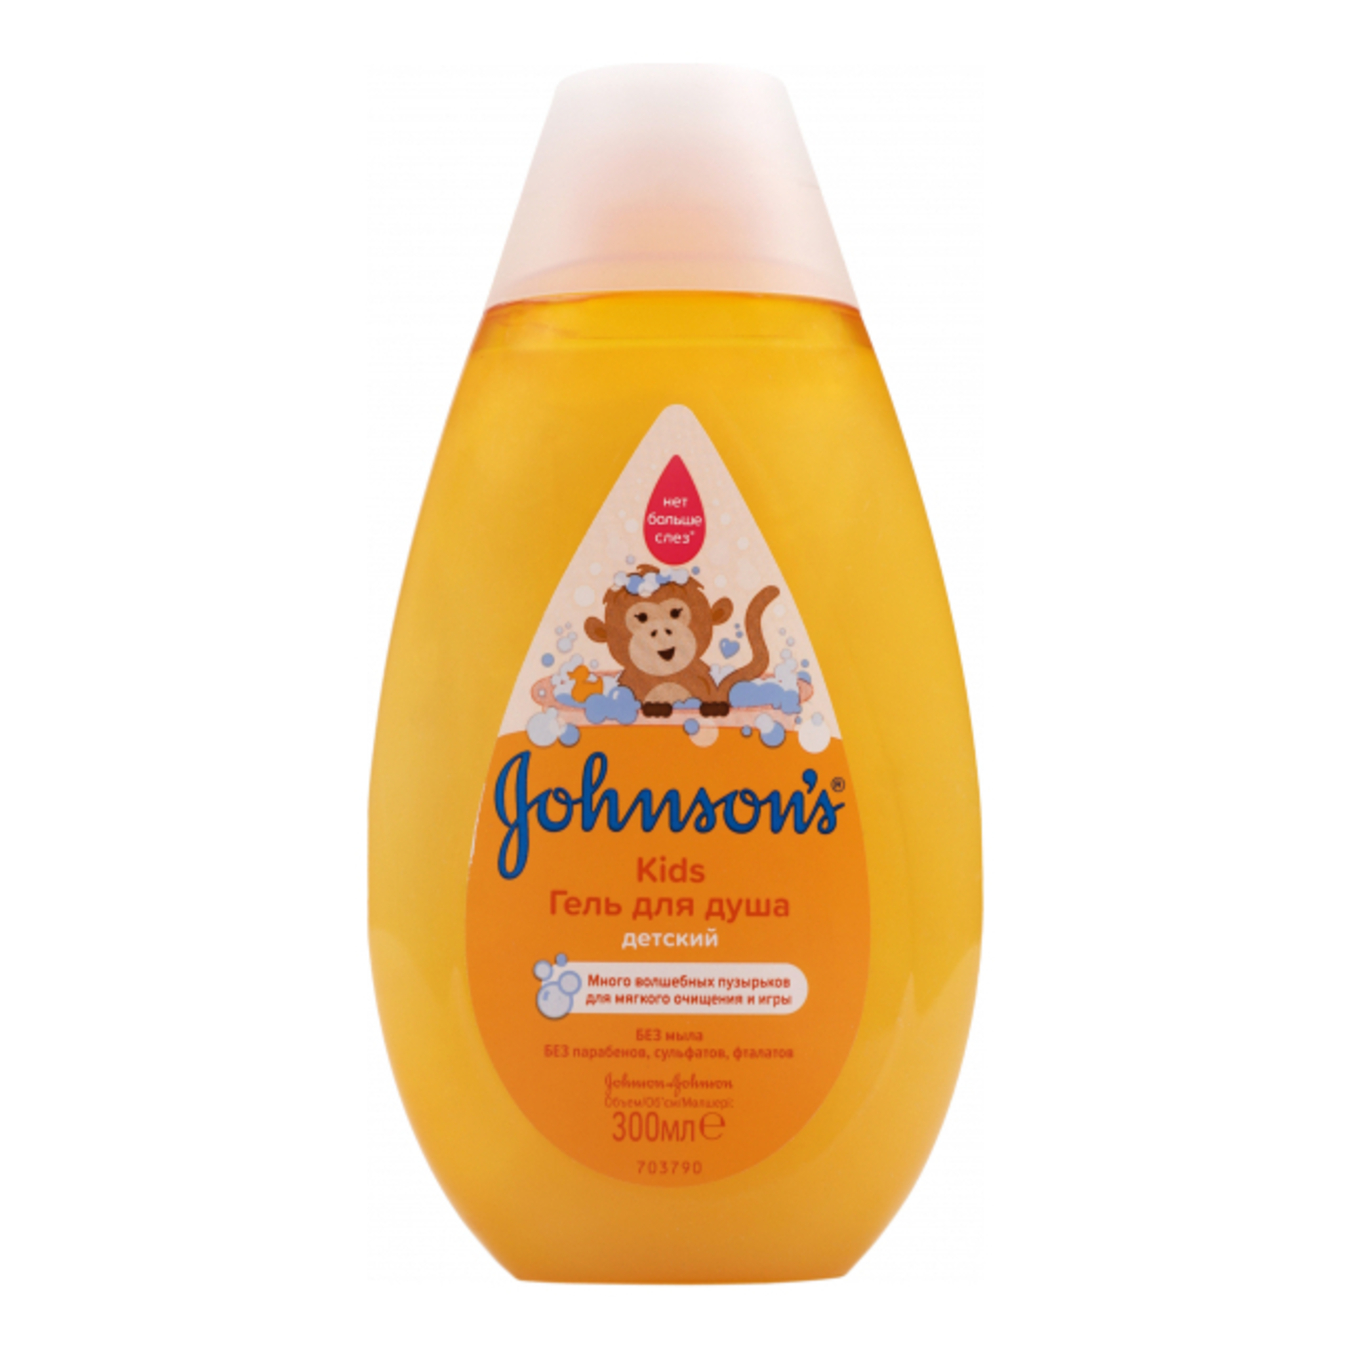 Johnson's Baby Johnson's Kids Shower Gel 300ml